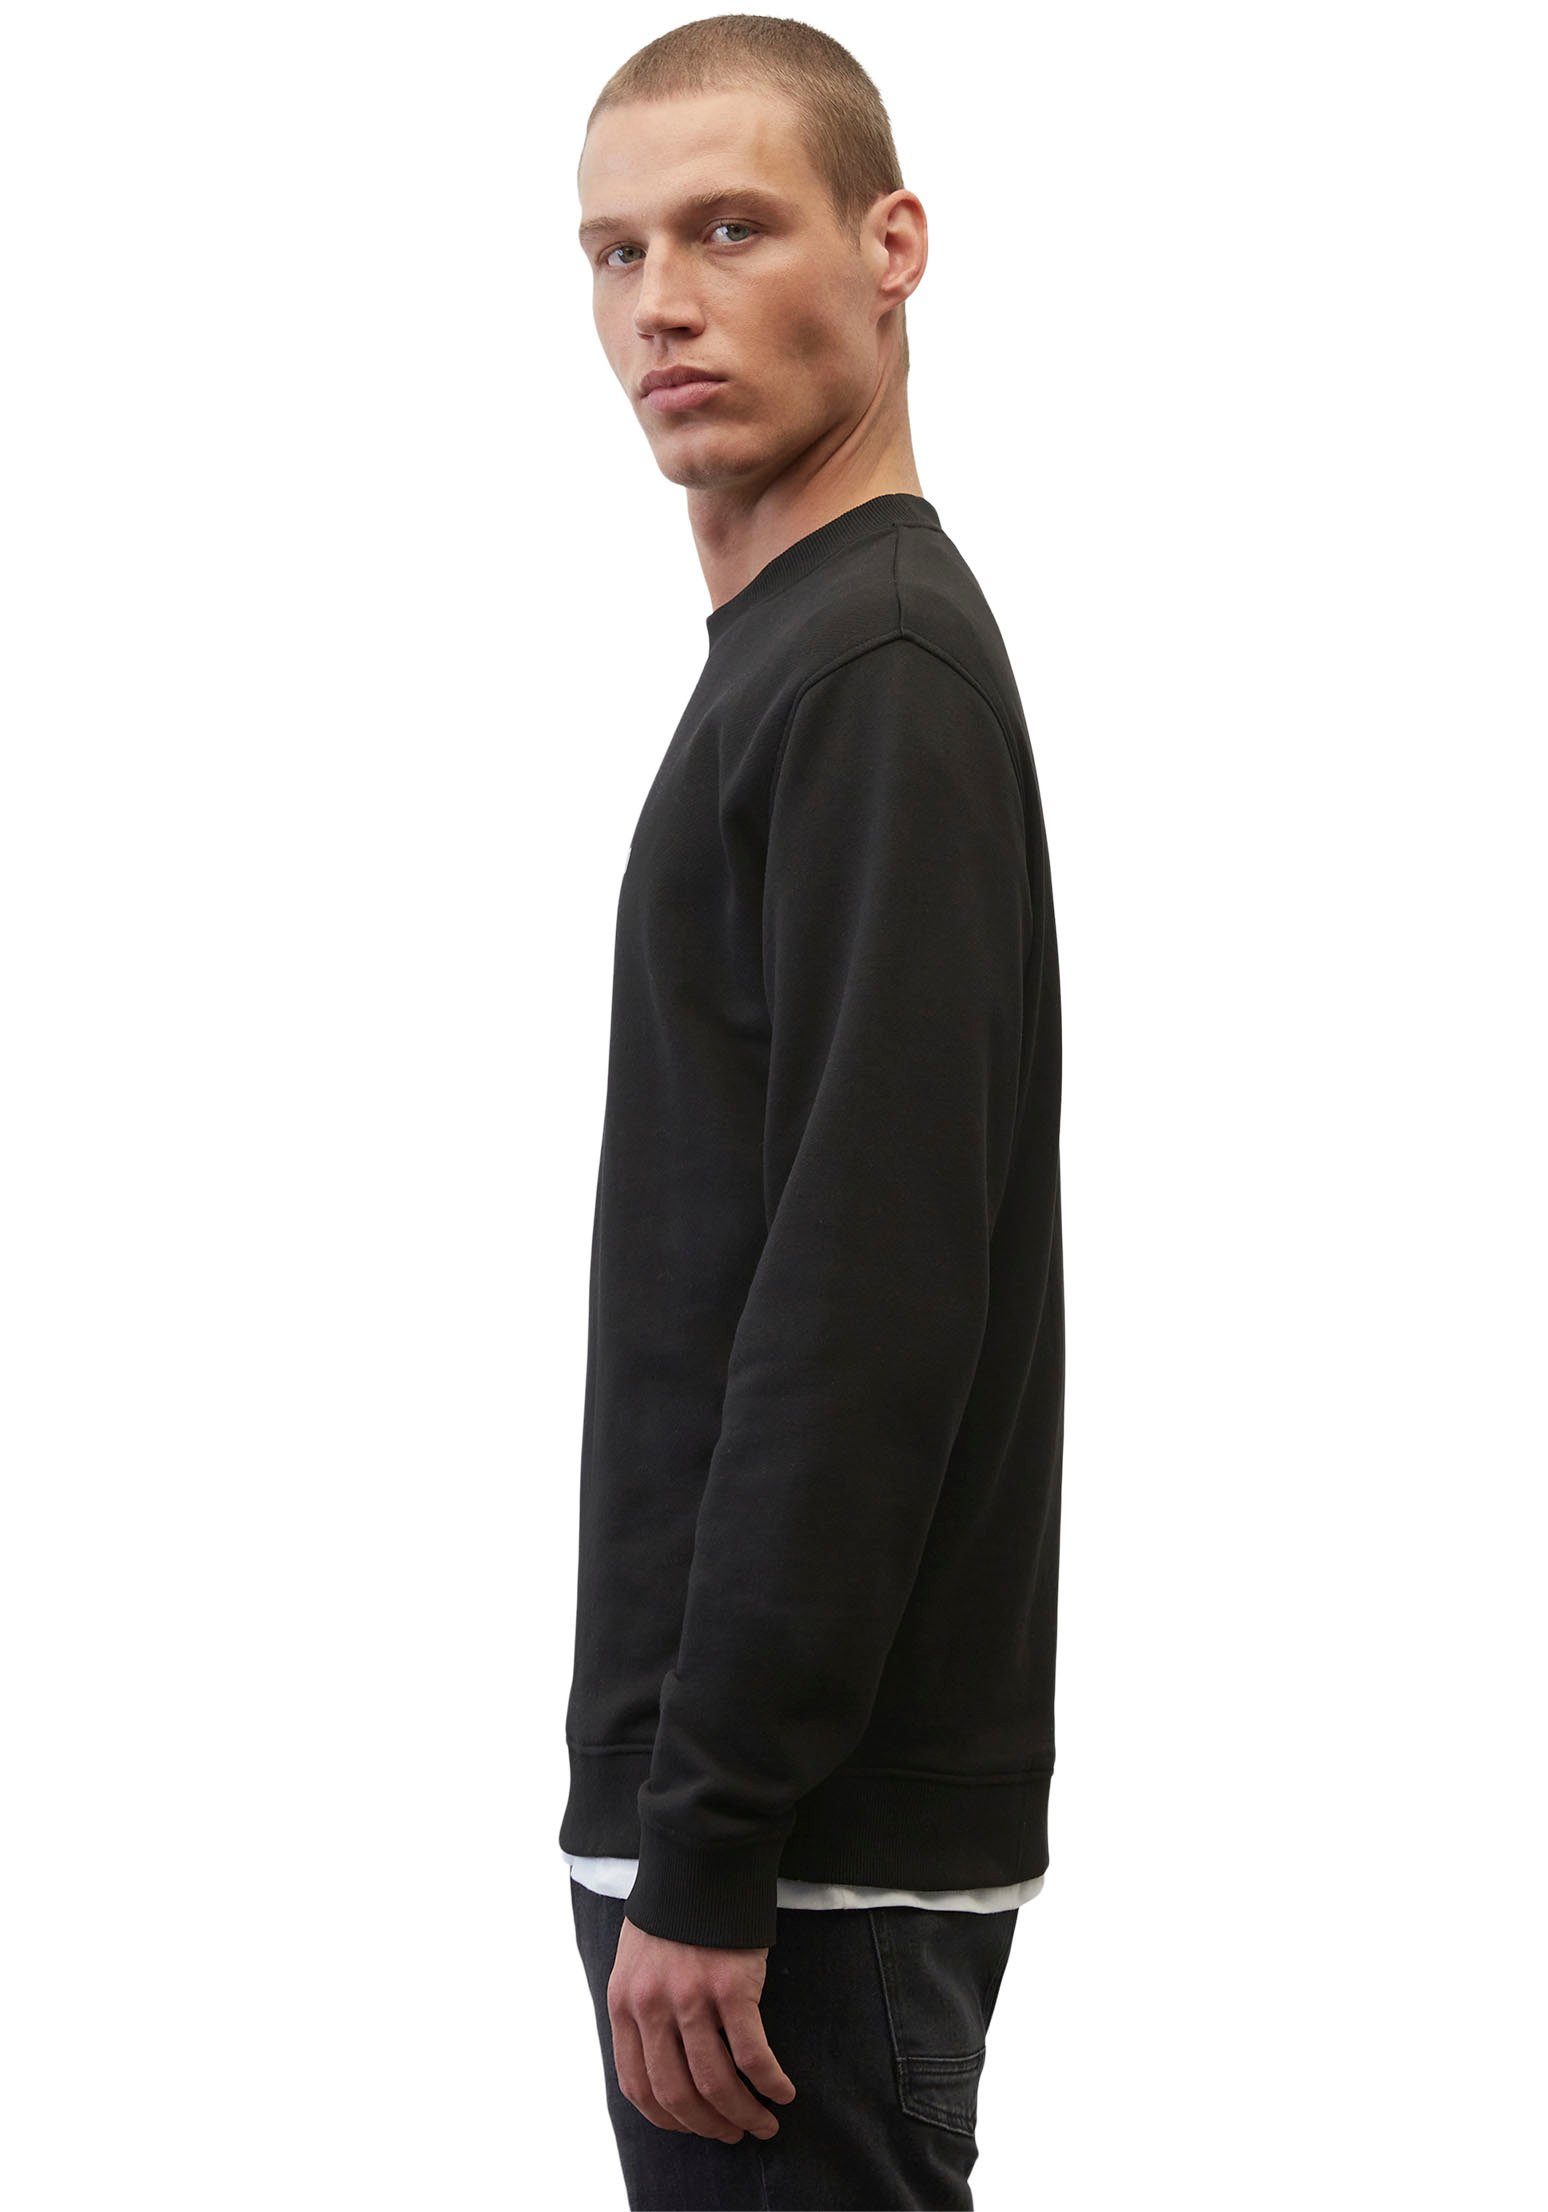 Sweatshirt schwarz O'Polo Label-Stickerei Marc mit DENIM großer vorne